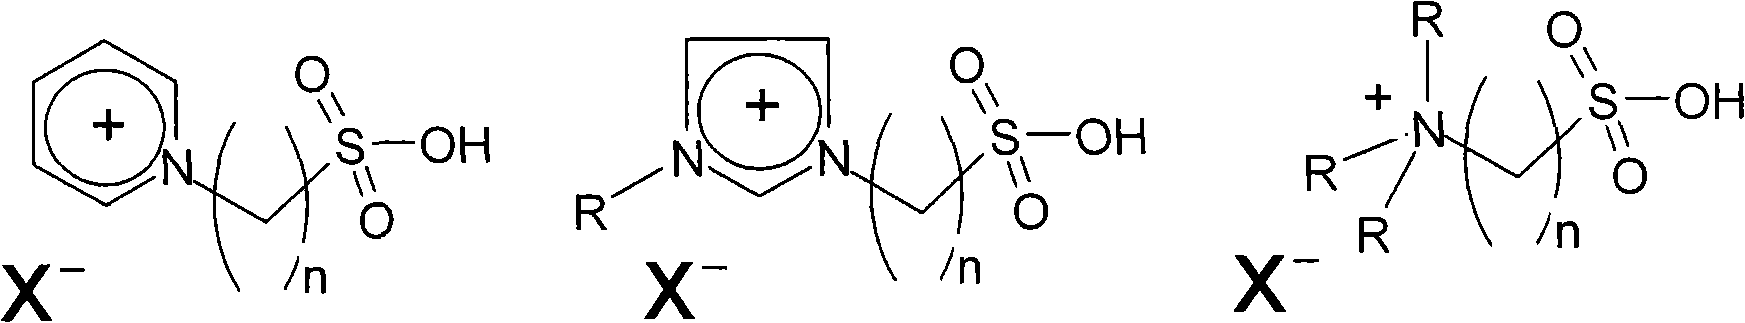 Method for preparing microbe diesel oil by ionic liquid catalysis